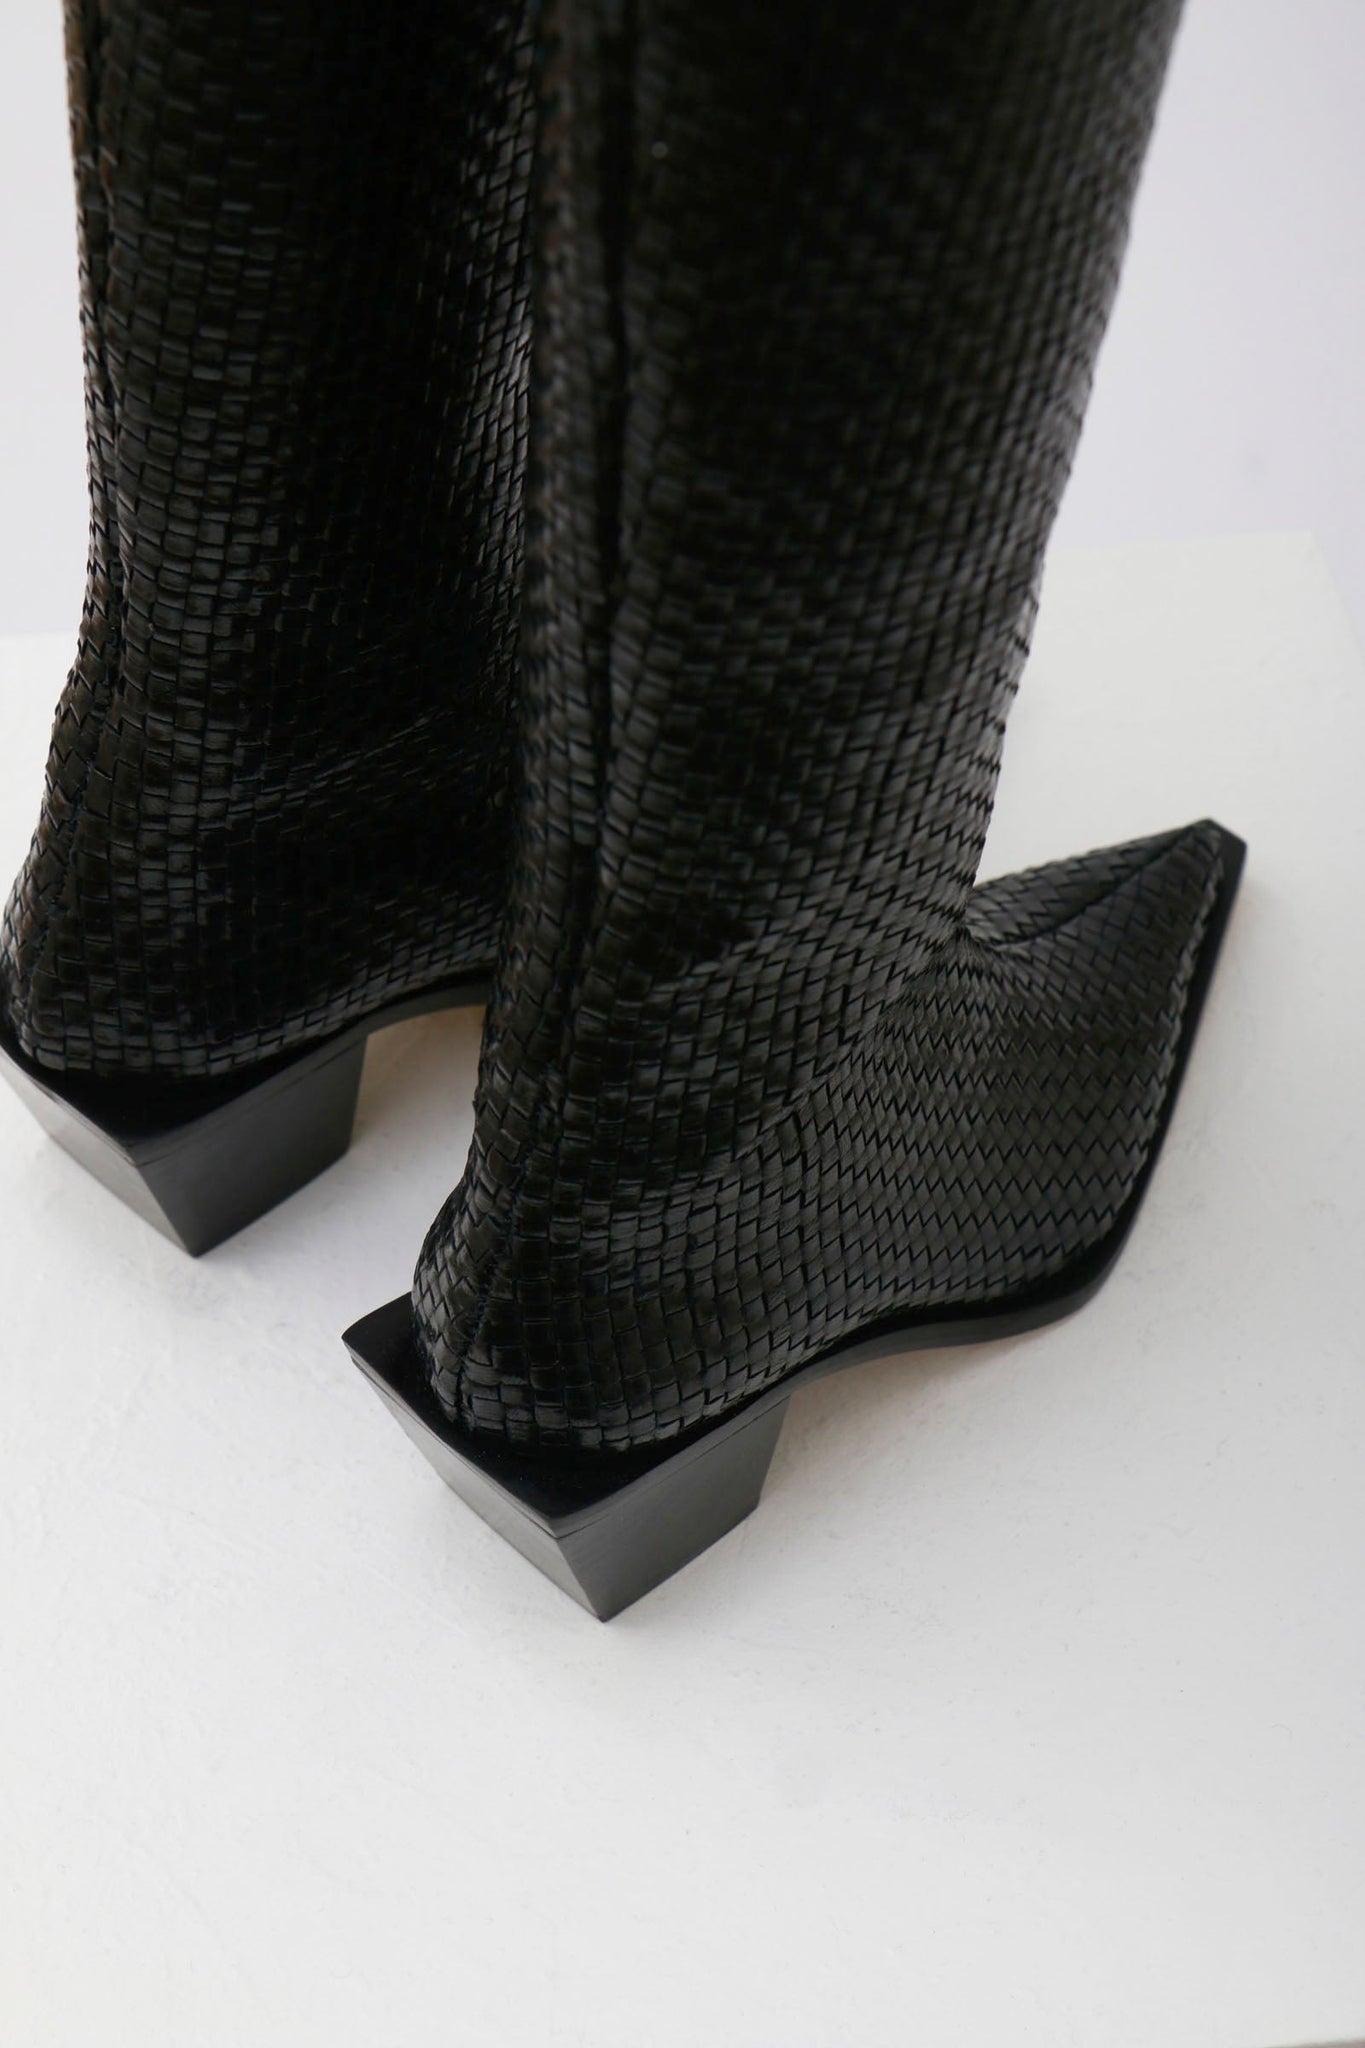 Souliers Martinez Shoes SOLE - Black Woven Leather Cowboy Boots 